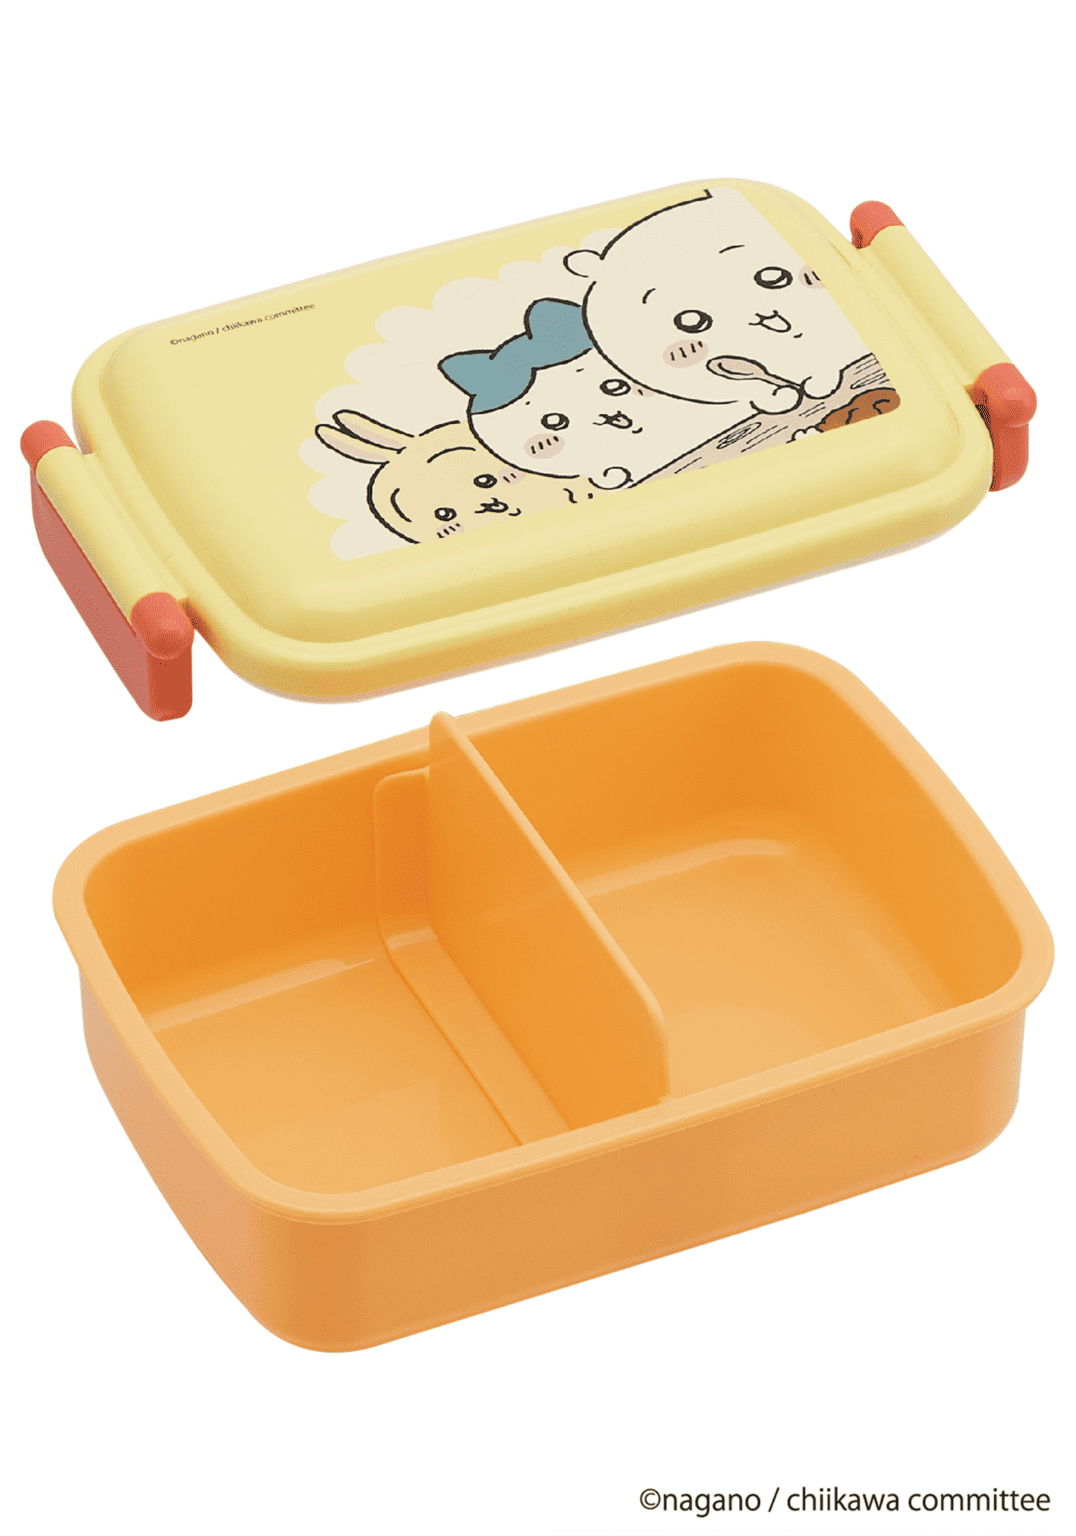 Clever Idiots Chiikawa Bento Lunch Box Kawaii Gifts 4973307655173